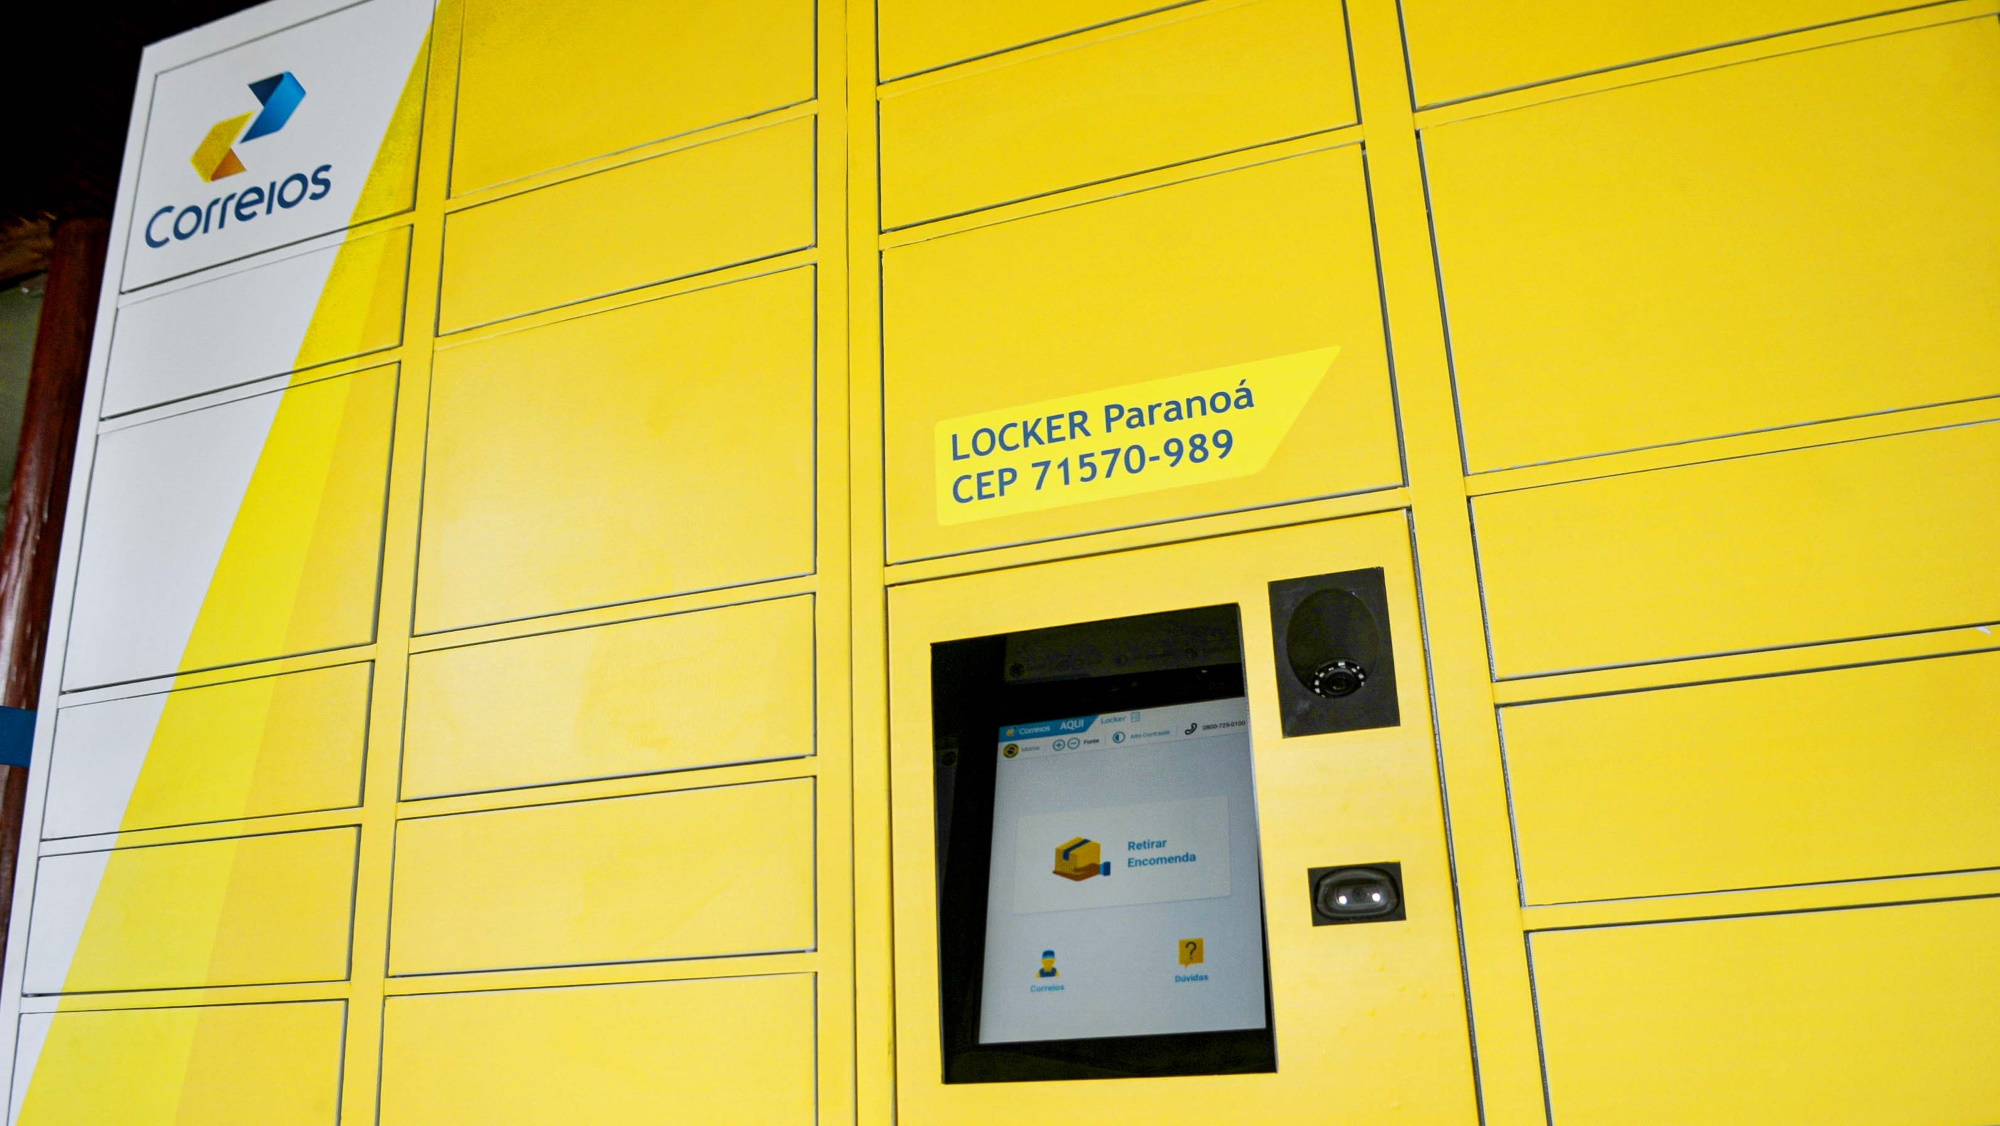 Correios instalam seu primeiro locker em SP para entrega de encomendas | Brasil